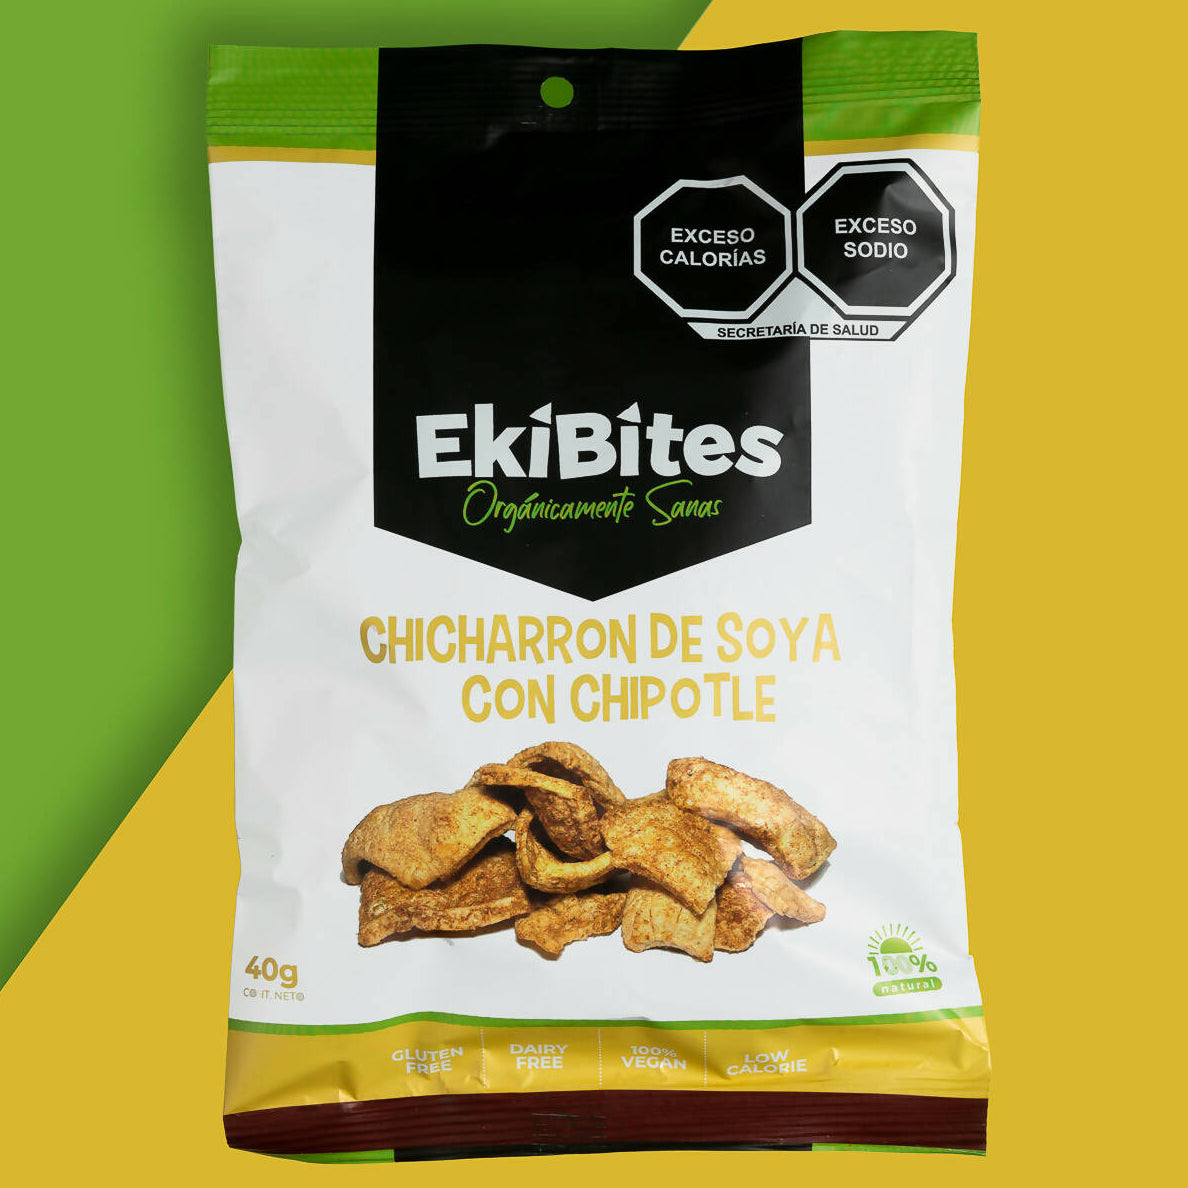 EKIBITES - Chicharrón de soya con chipotle (40g c/u) Caja con 35 paquetes